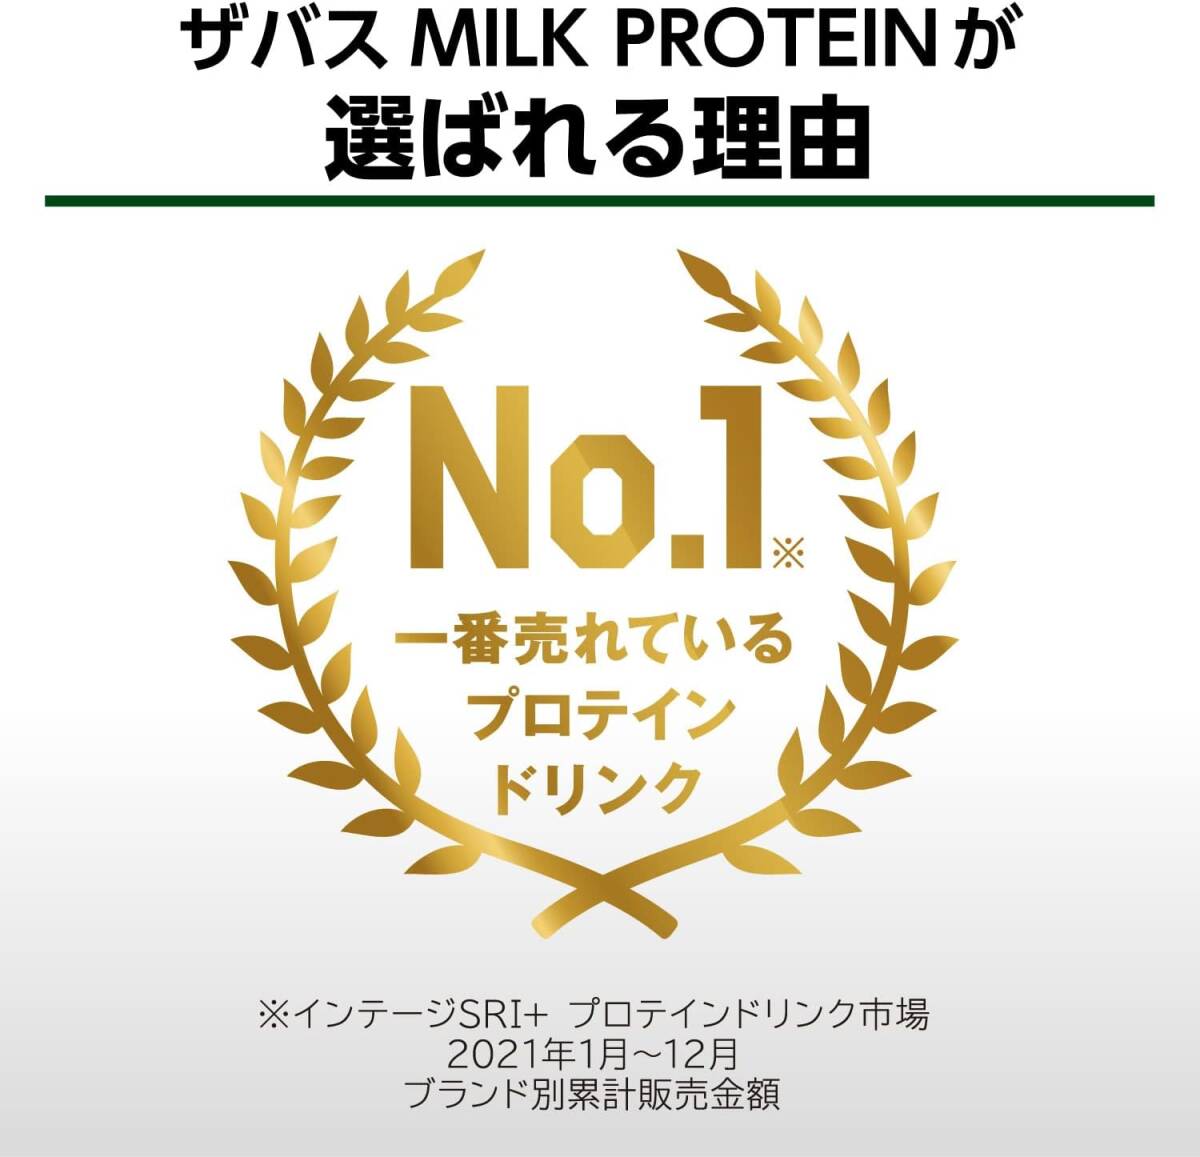 SAVAS( The bus ) MILK PROTEIN fat .0 banana manner taste 200ml×24 Meiji milk protein 